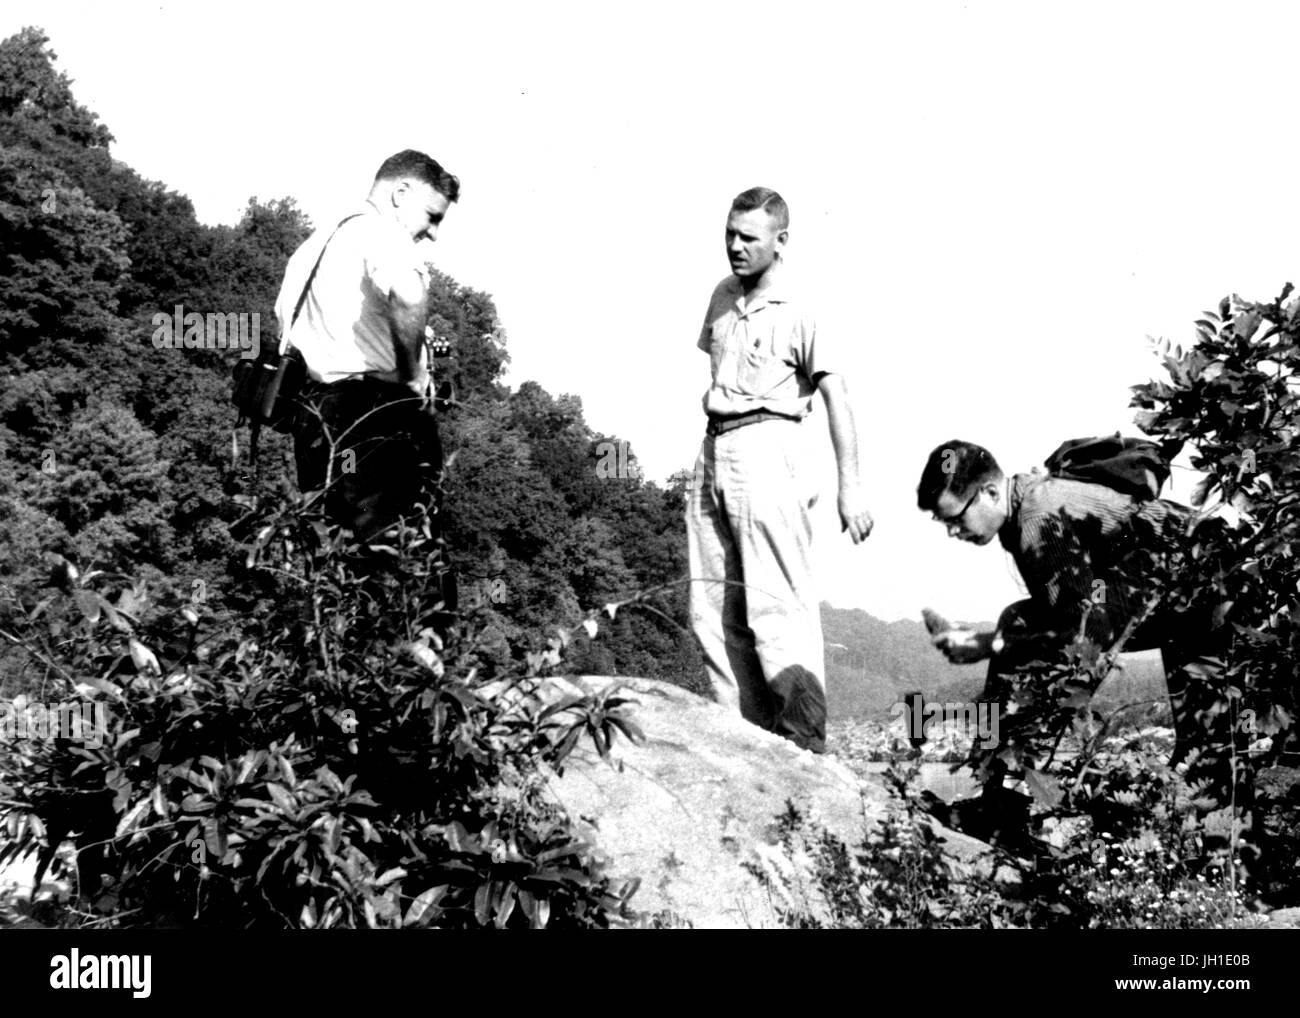 Wescott George Fisher, Clifford A. Hopson, et J. S. Reed, les étudiants d'une classe de la géologie de l'Université Johns Hopkins, prélever des échantillons sur le terrain, 1950. Banque D'Images